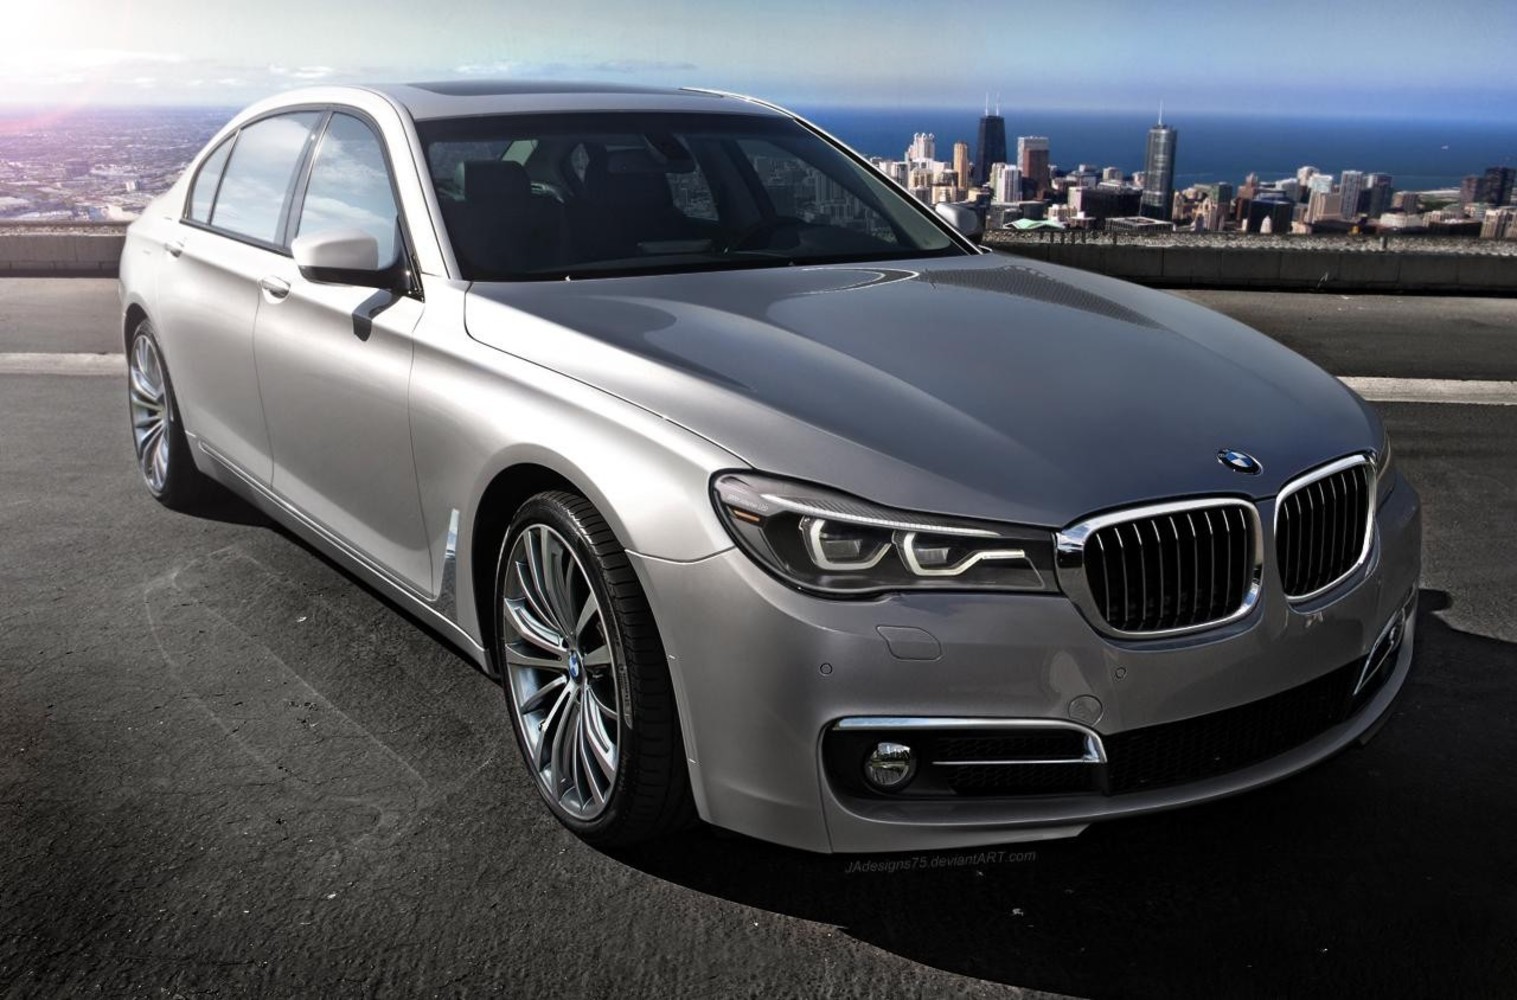 Новый BMW 7 Series получит дизельный V6 с четырьмя турбинами и мощностью 395 л.с